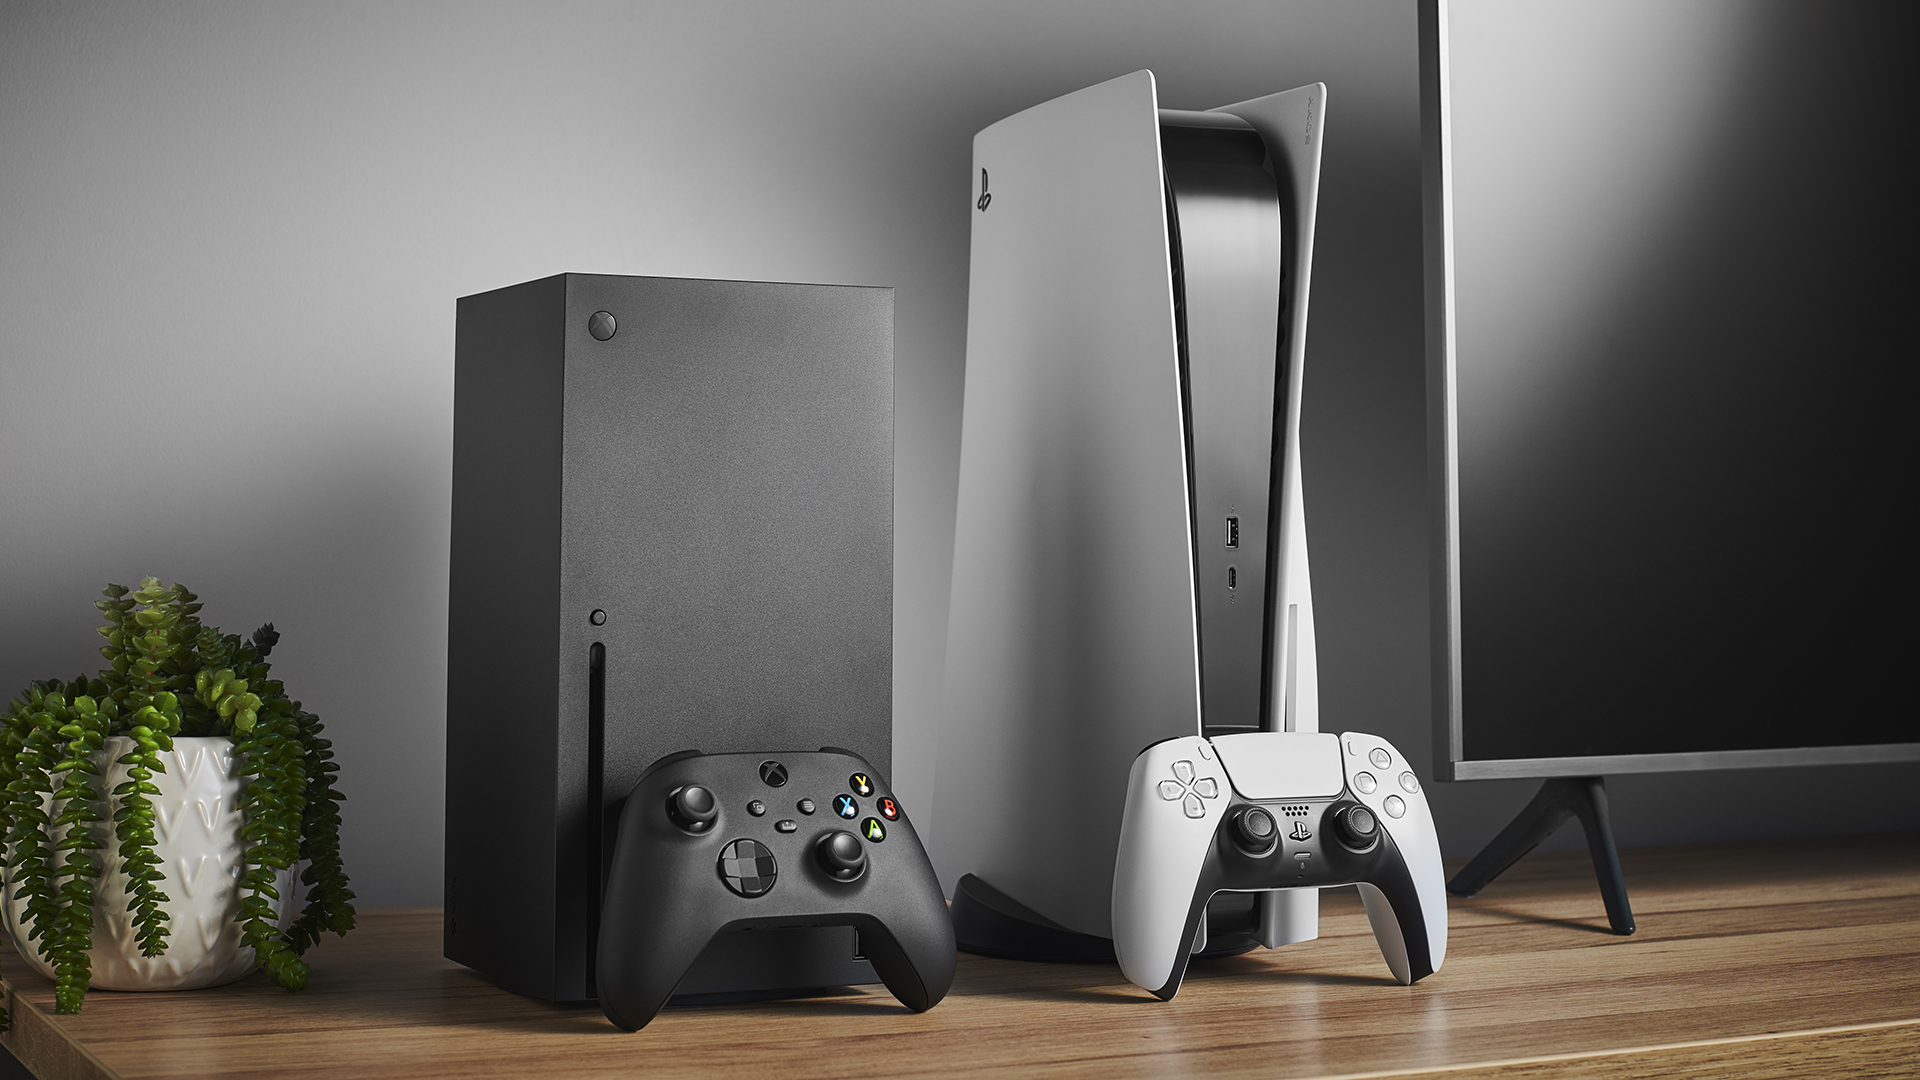 كيف تتفوق مساحات تخزين منصات Xbox Series X|S على PS5 المحدودة؟